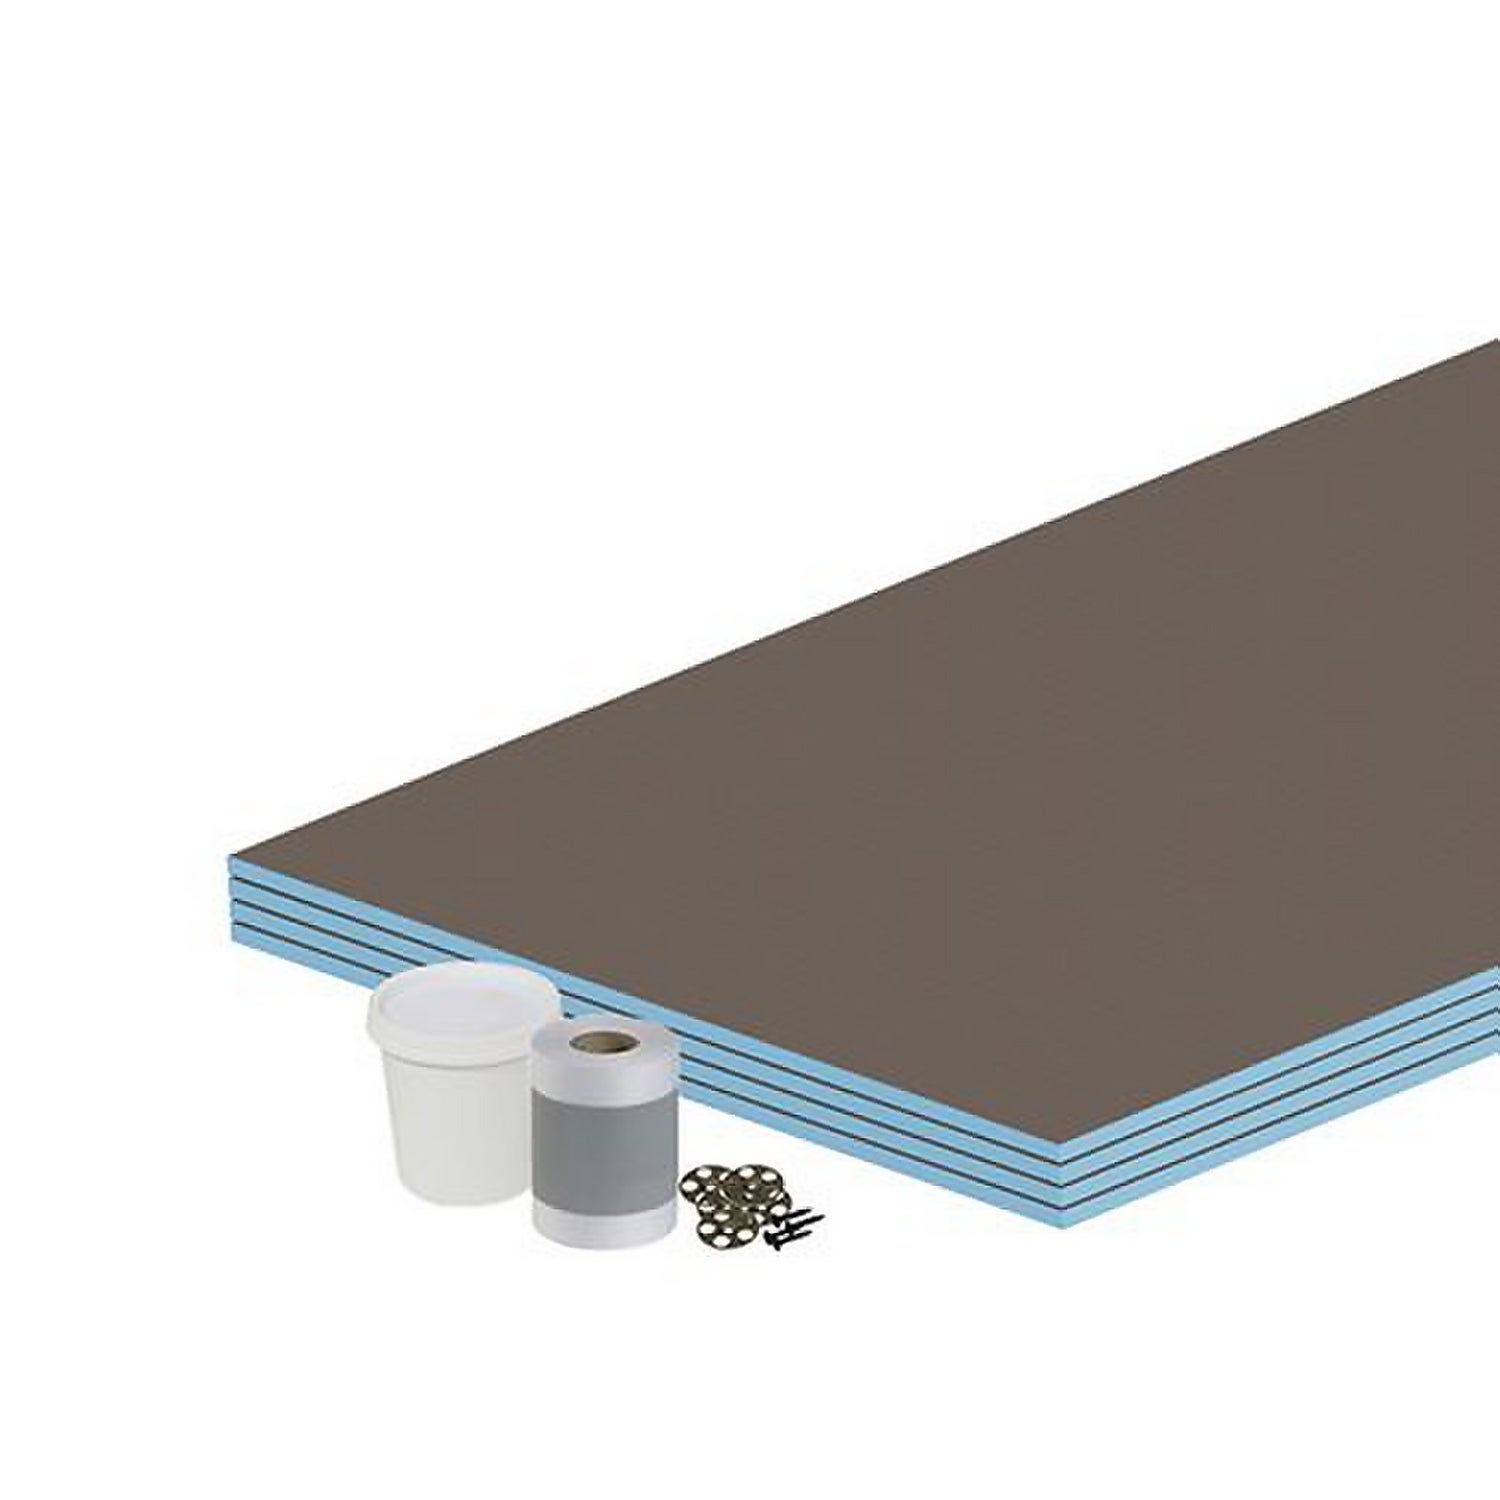 Floor Kit 10mm Tile backer board 2.88m2 for Wet room